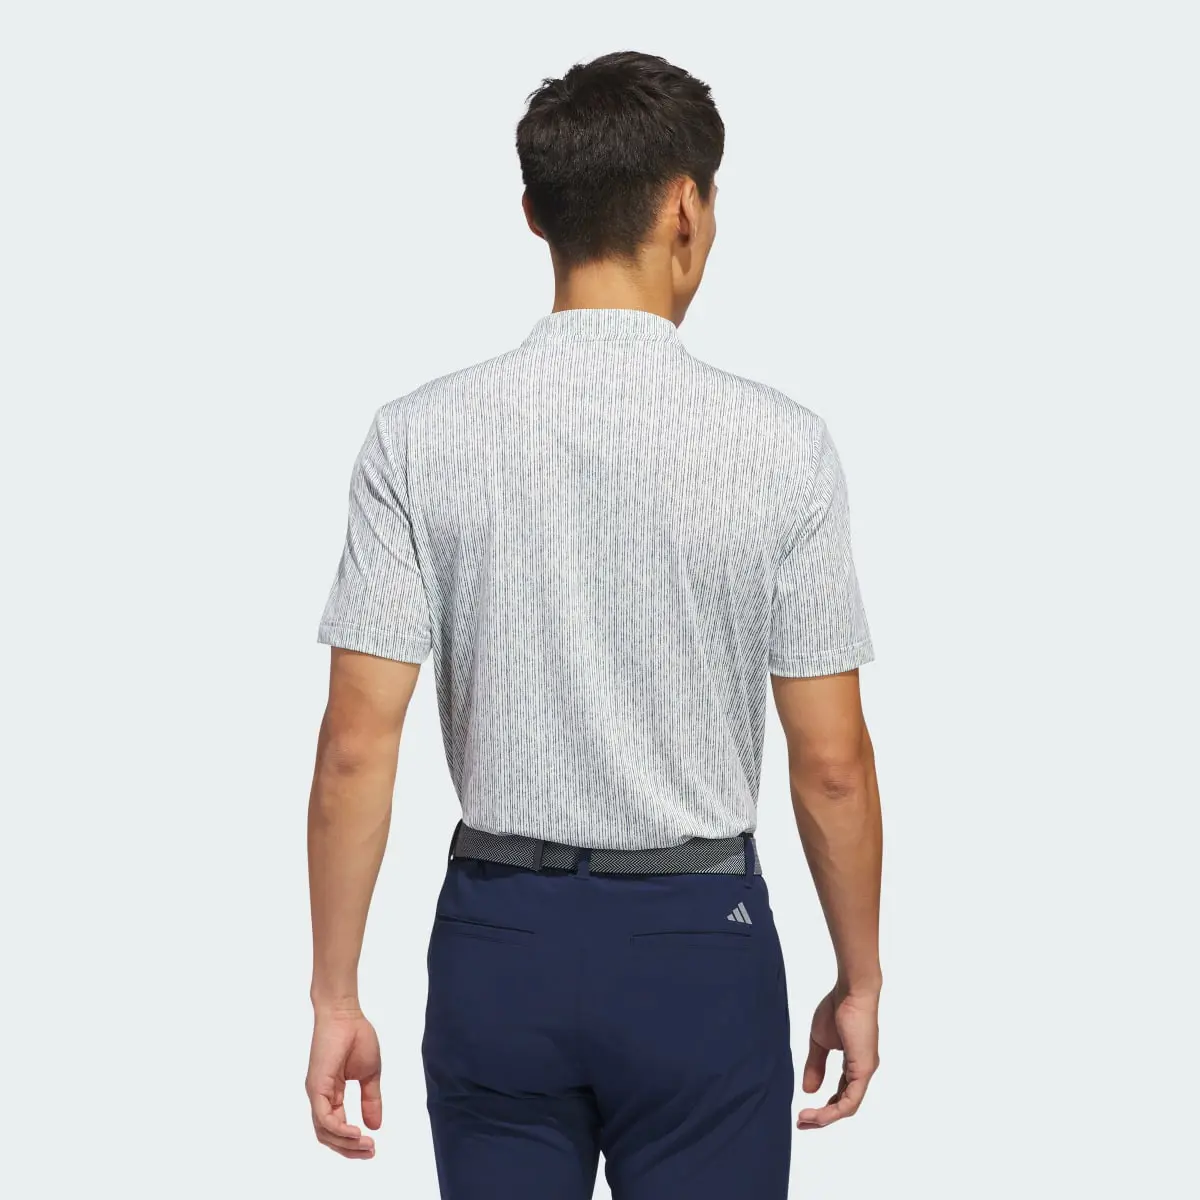 Adidas Ultimate365 Printed Polo Shirt. 3